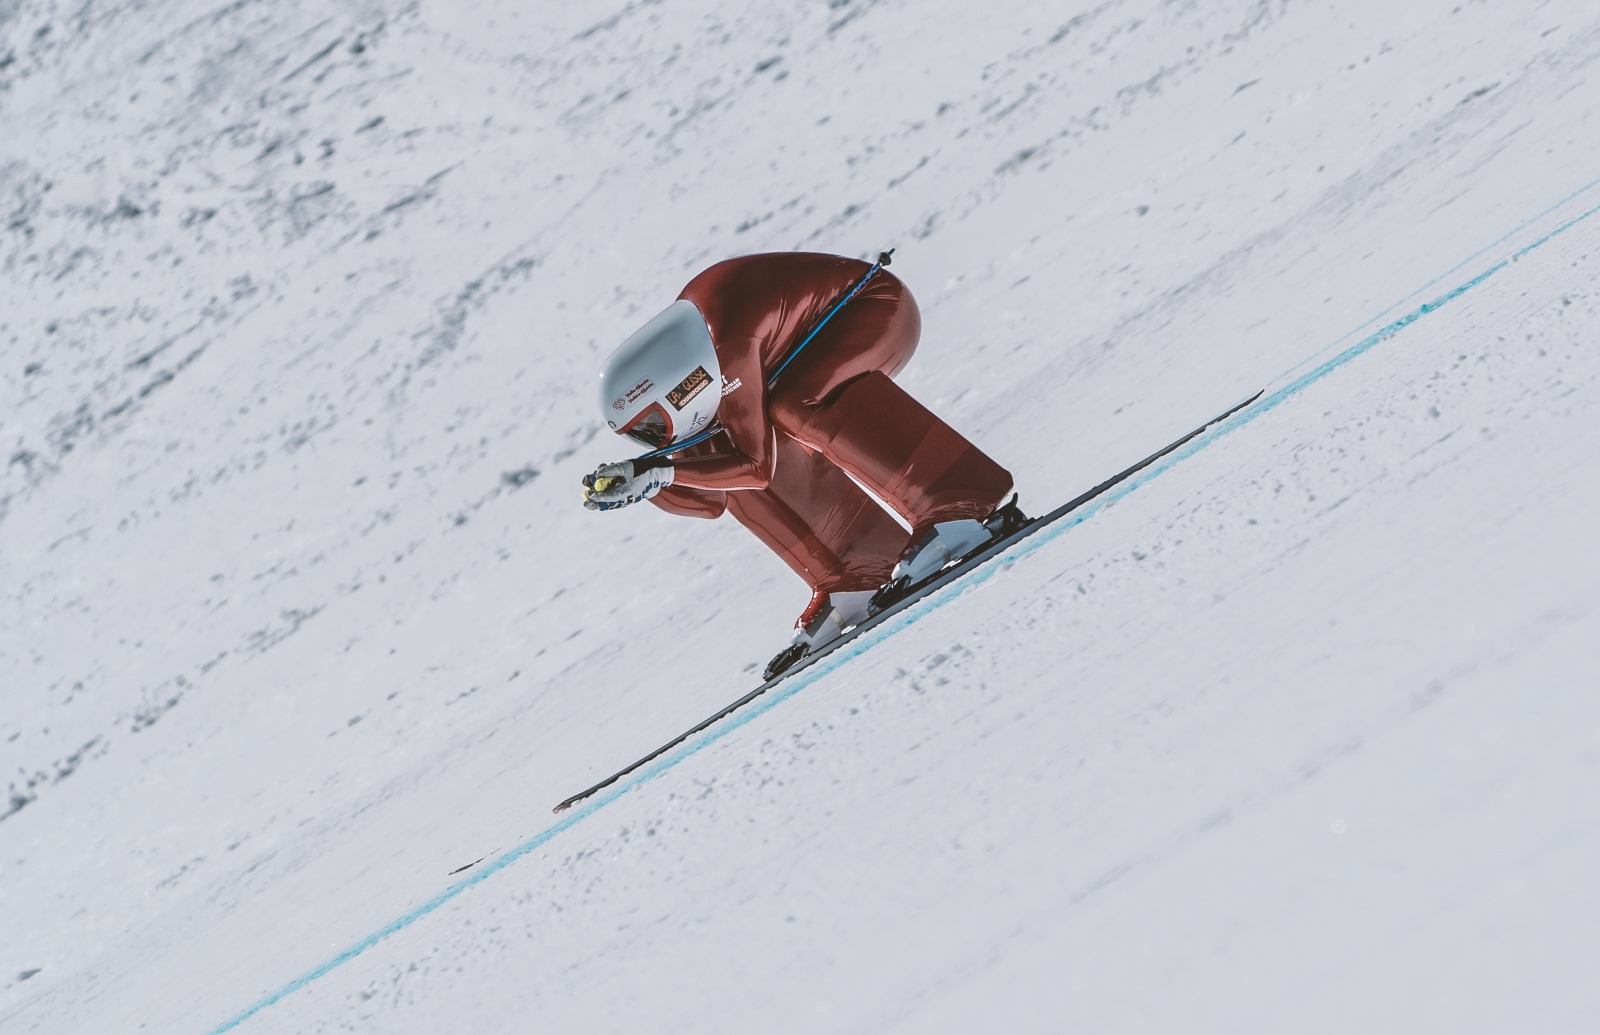 Simone Origone vuela hasta los 228 km/h y se adjudica el Campeonato del Mundo de Speed Ski